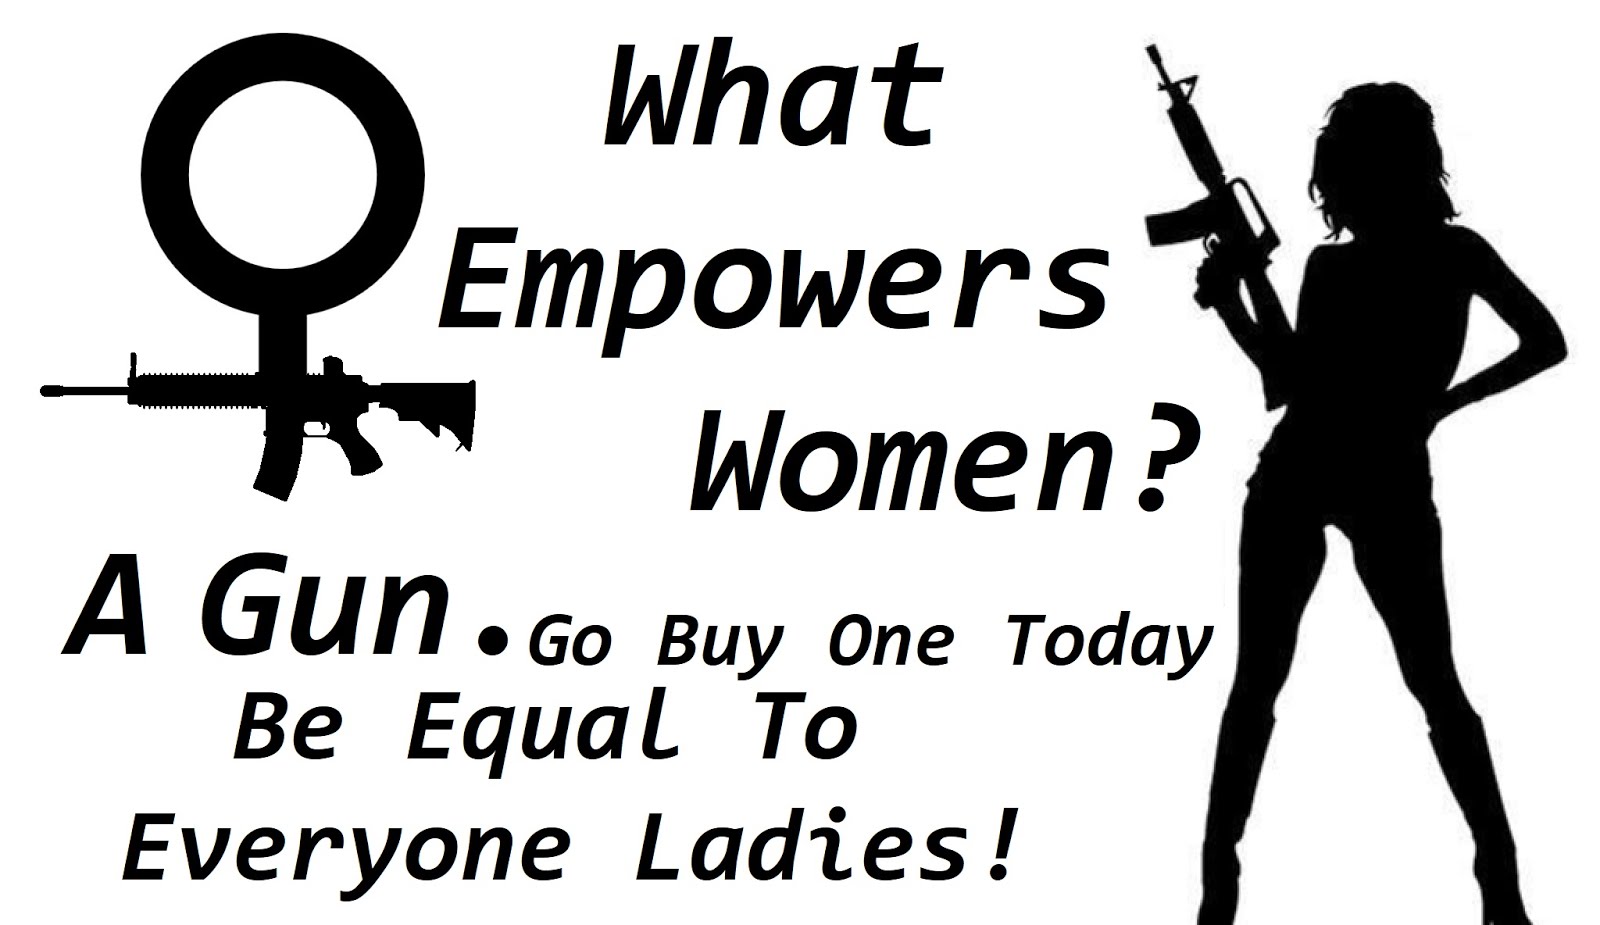 What Empowers Women? A GUN!